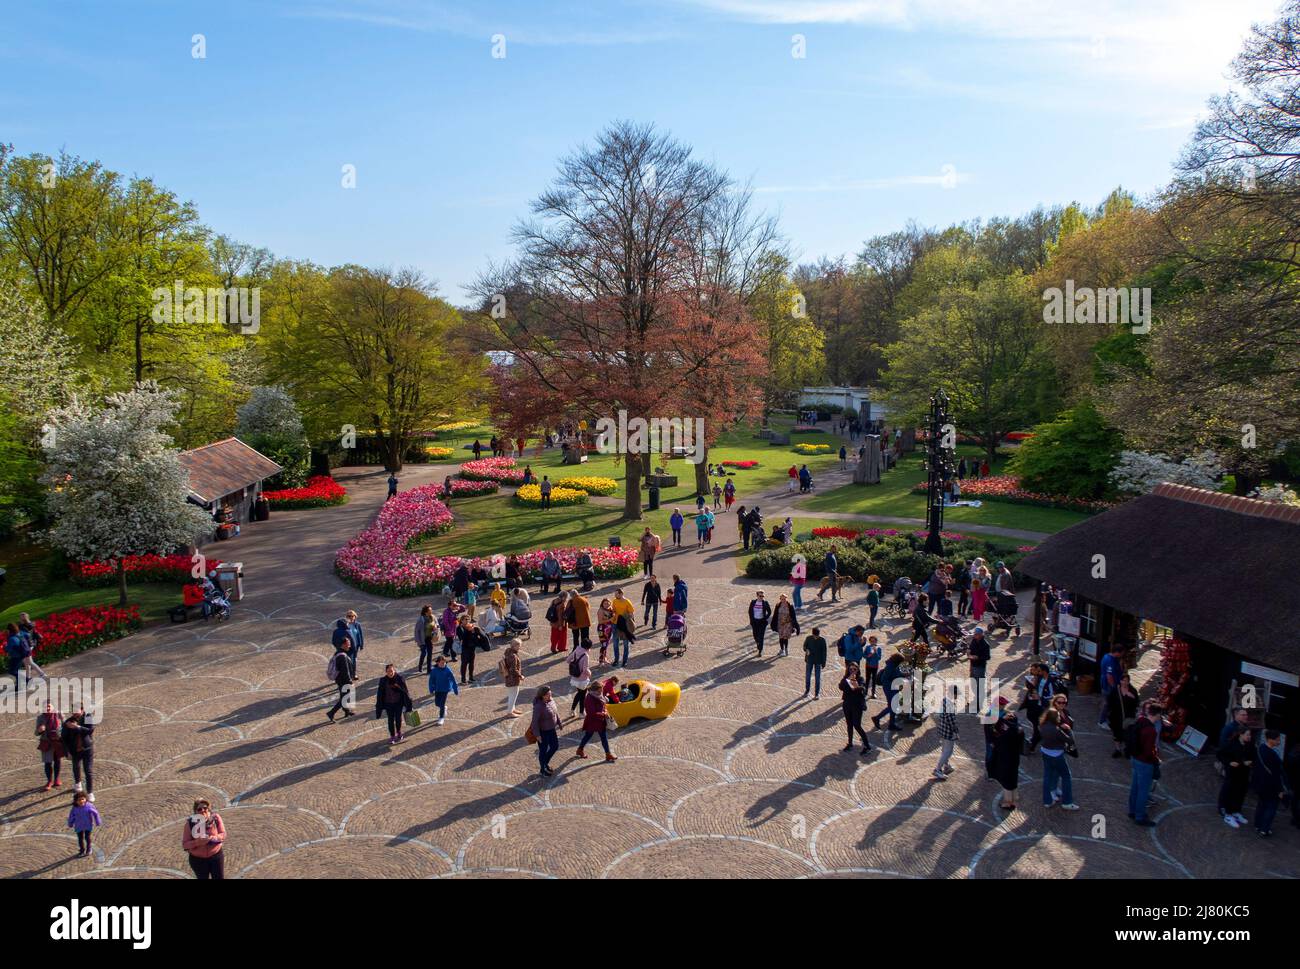 Der Keukenhof Park, auch bekannt als der Garten Europas, ist einer der größten Blumengärten der Welt und liegt in der Gemeinde Lisse in den Niederlanden Stockfoto